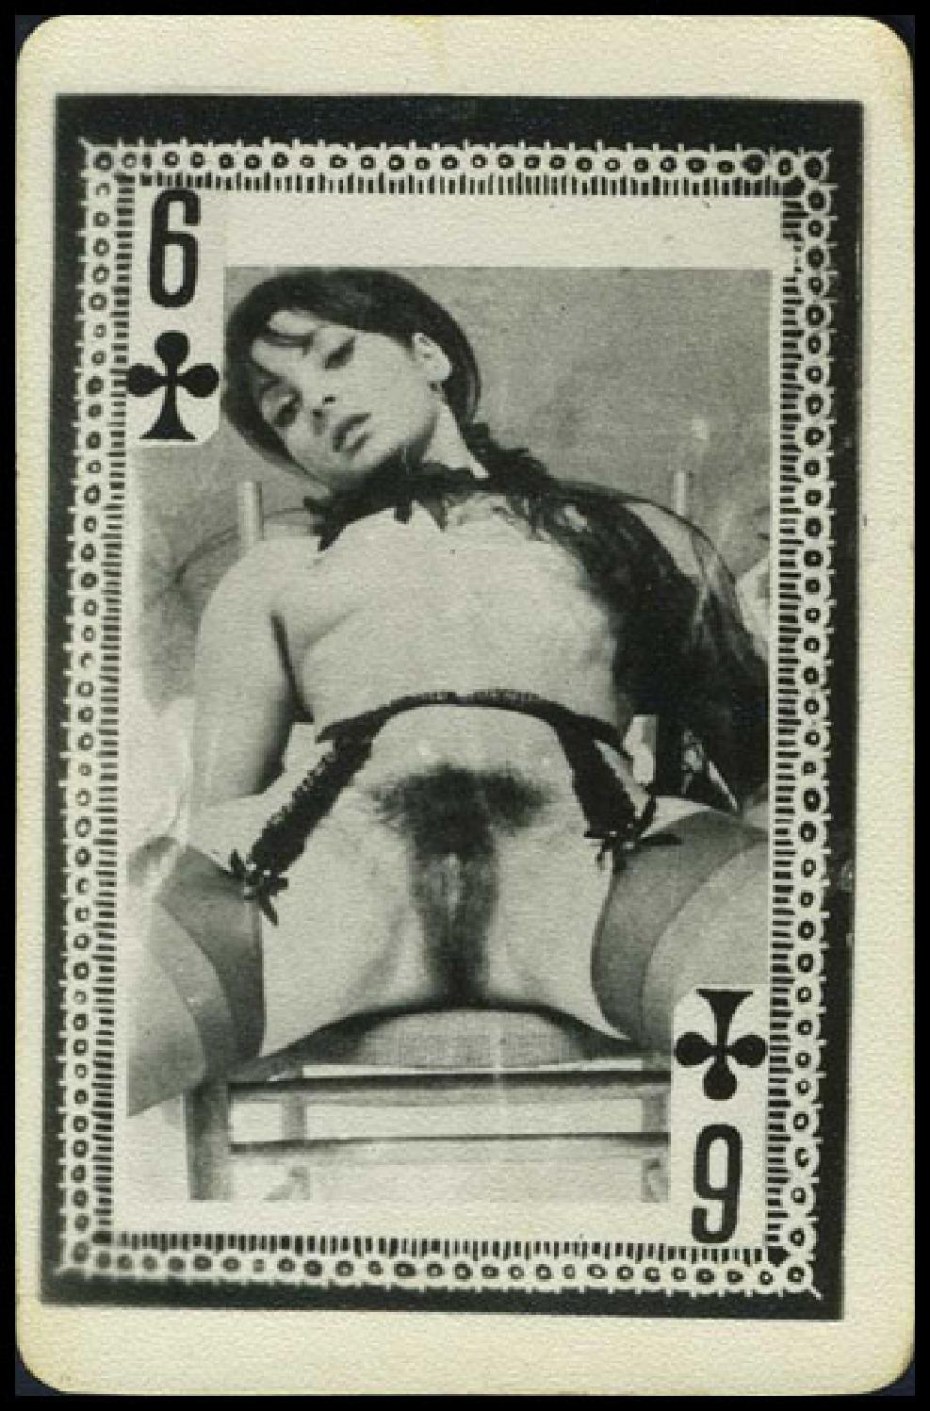 ретро игральные карты эротика (120) фото